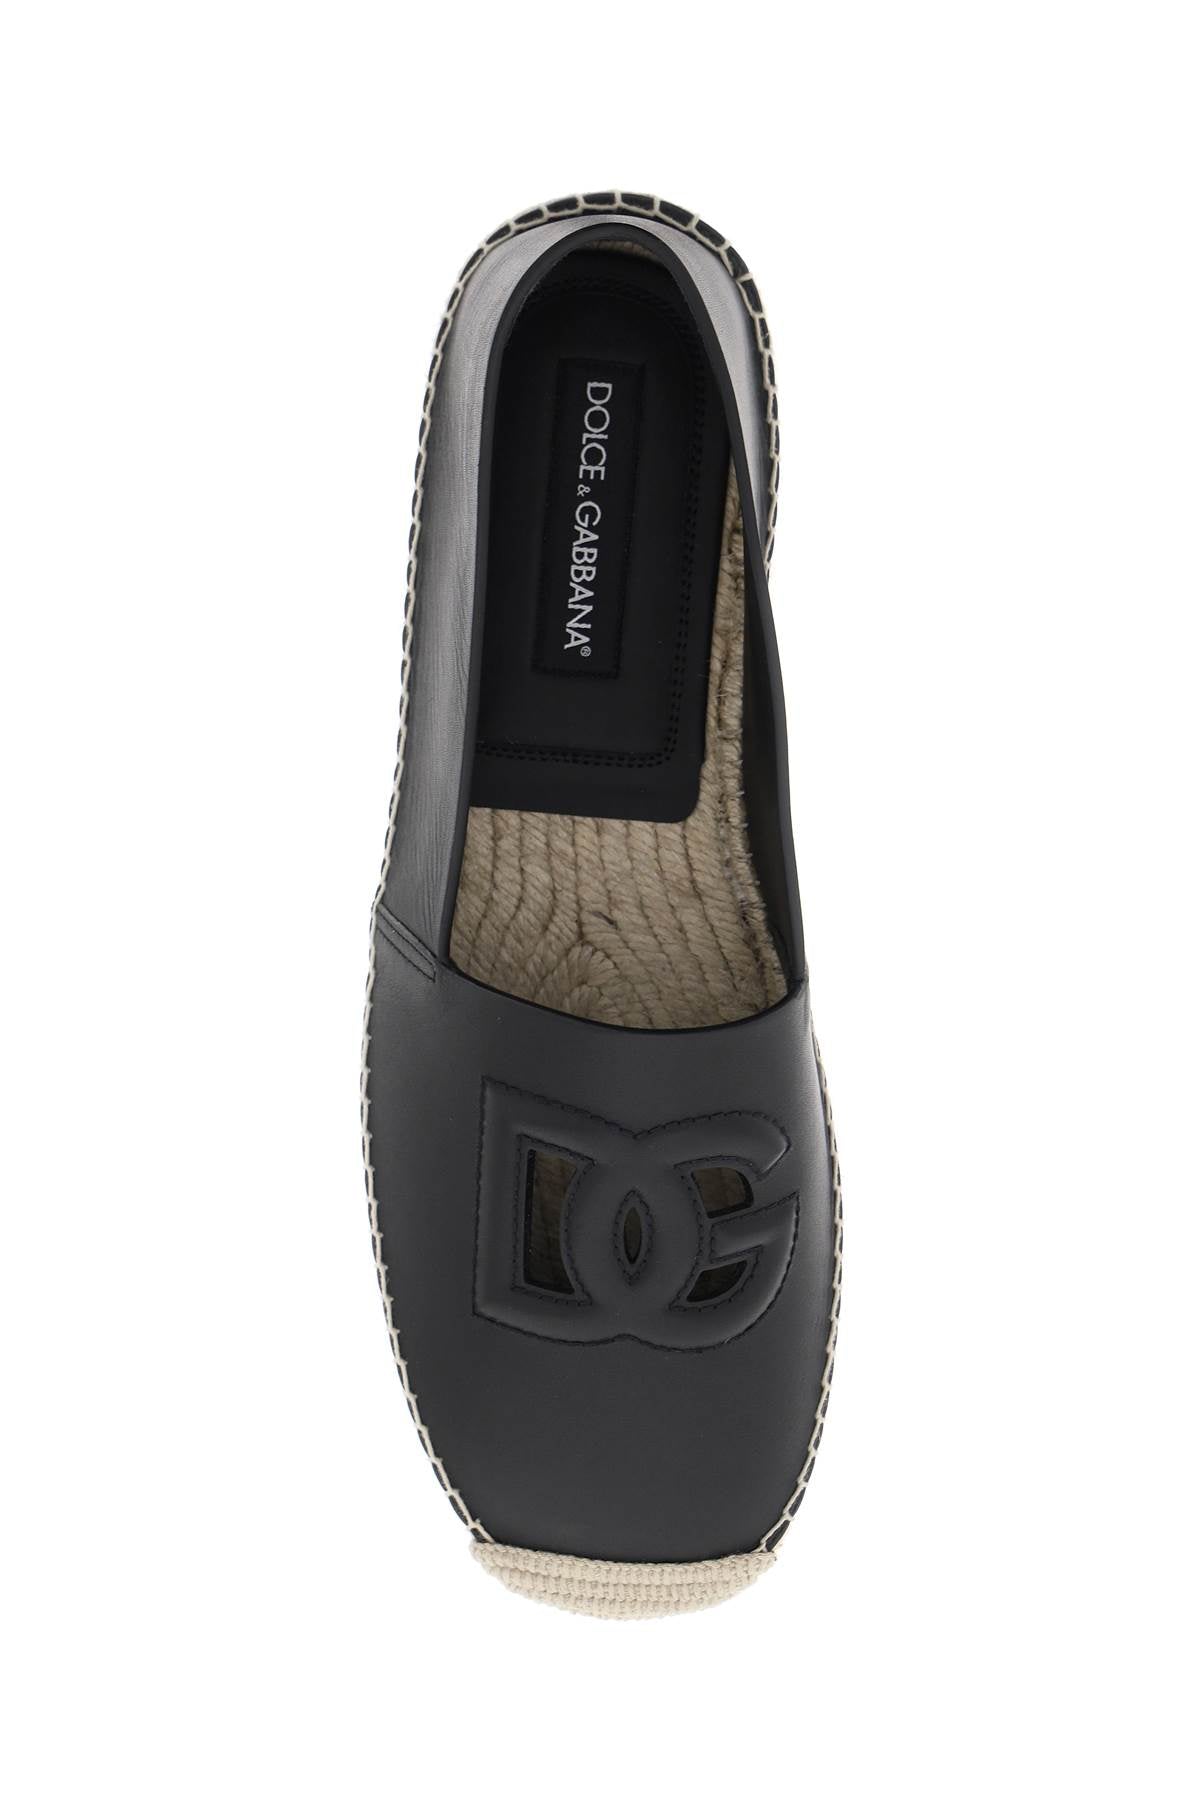 Giày Espadrilles da bò đen ĐỘT PHÁ với logo DG bằng so le làm điểm nhấn dành cho nam giới